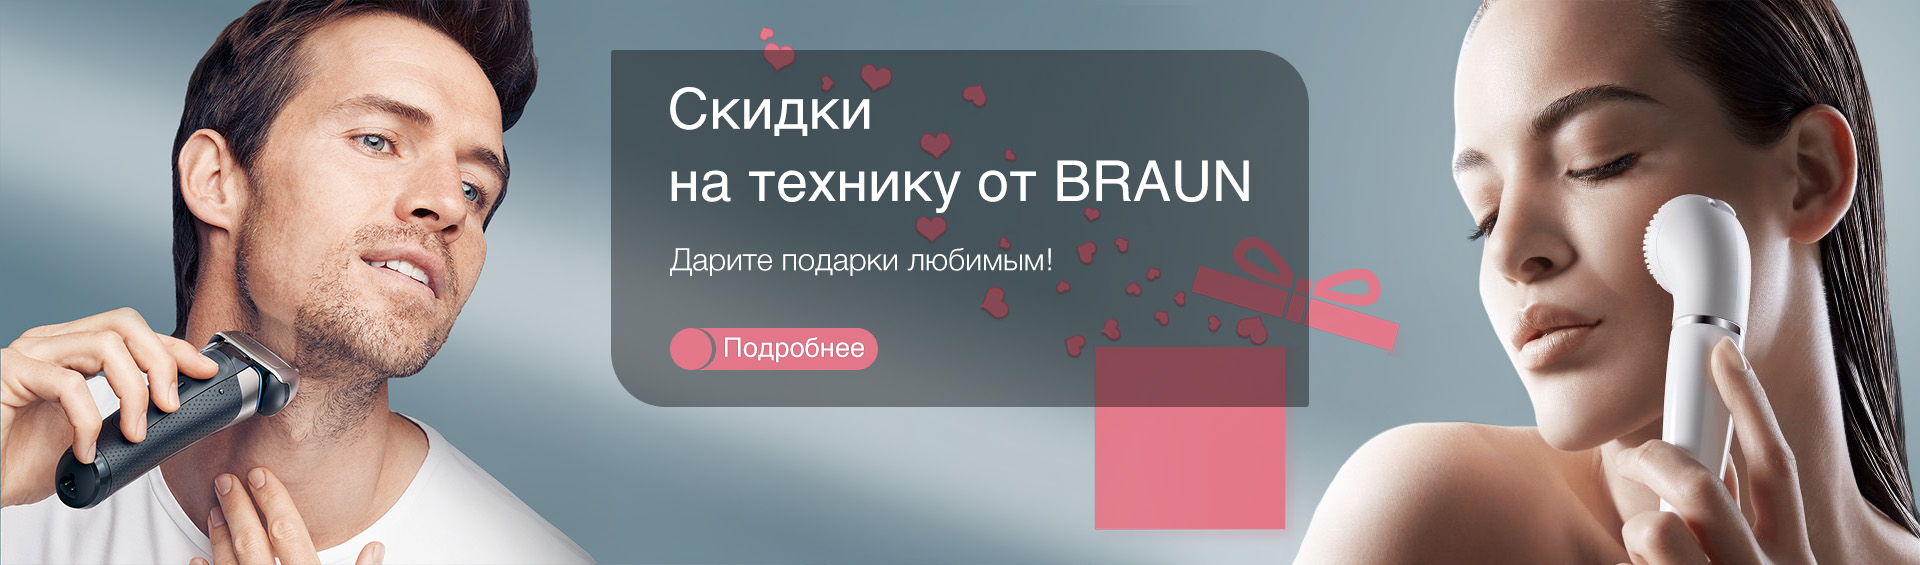 Скидки на технику Braun ко Дню Святого Валентина!